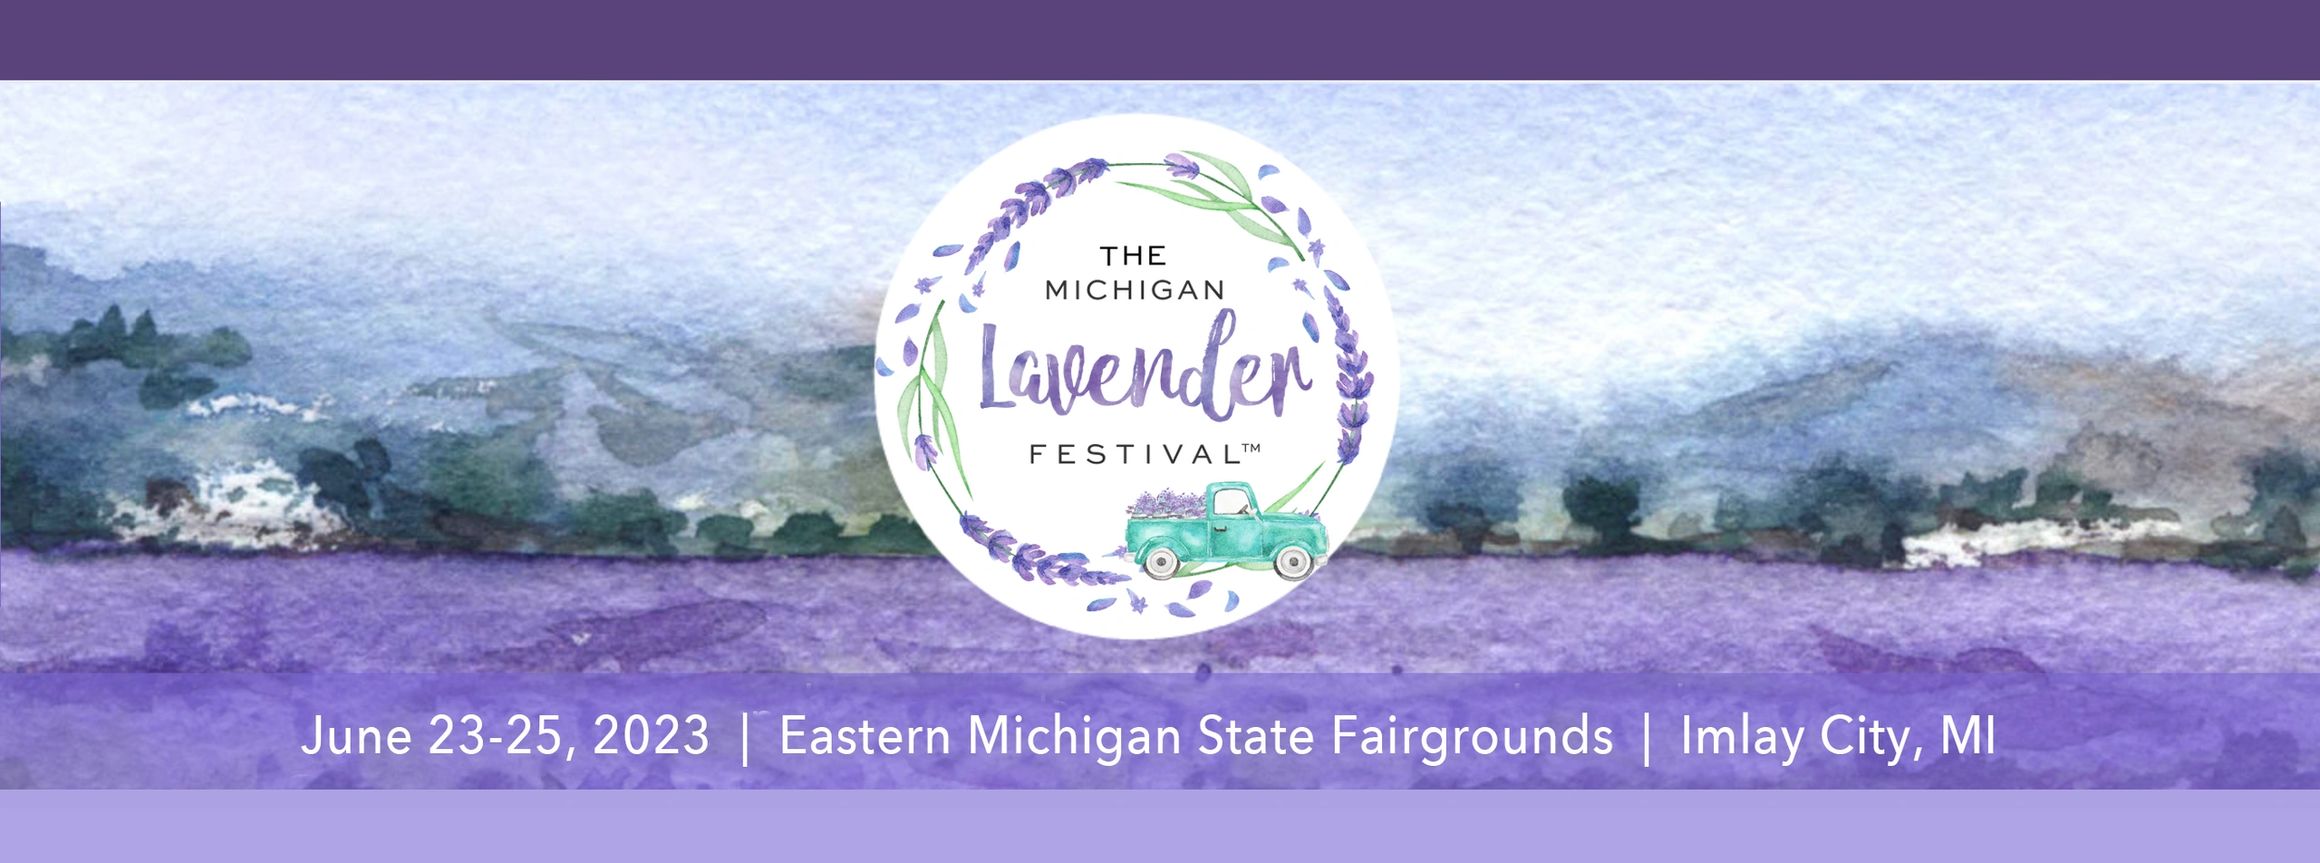 The Michigan Lavender Festival Imlay City, MI